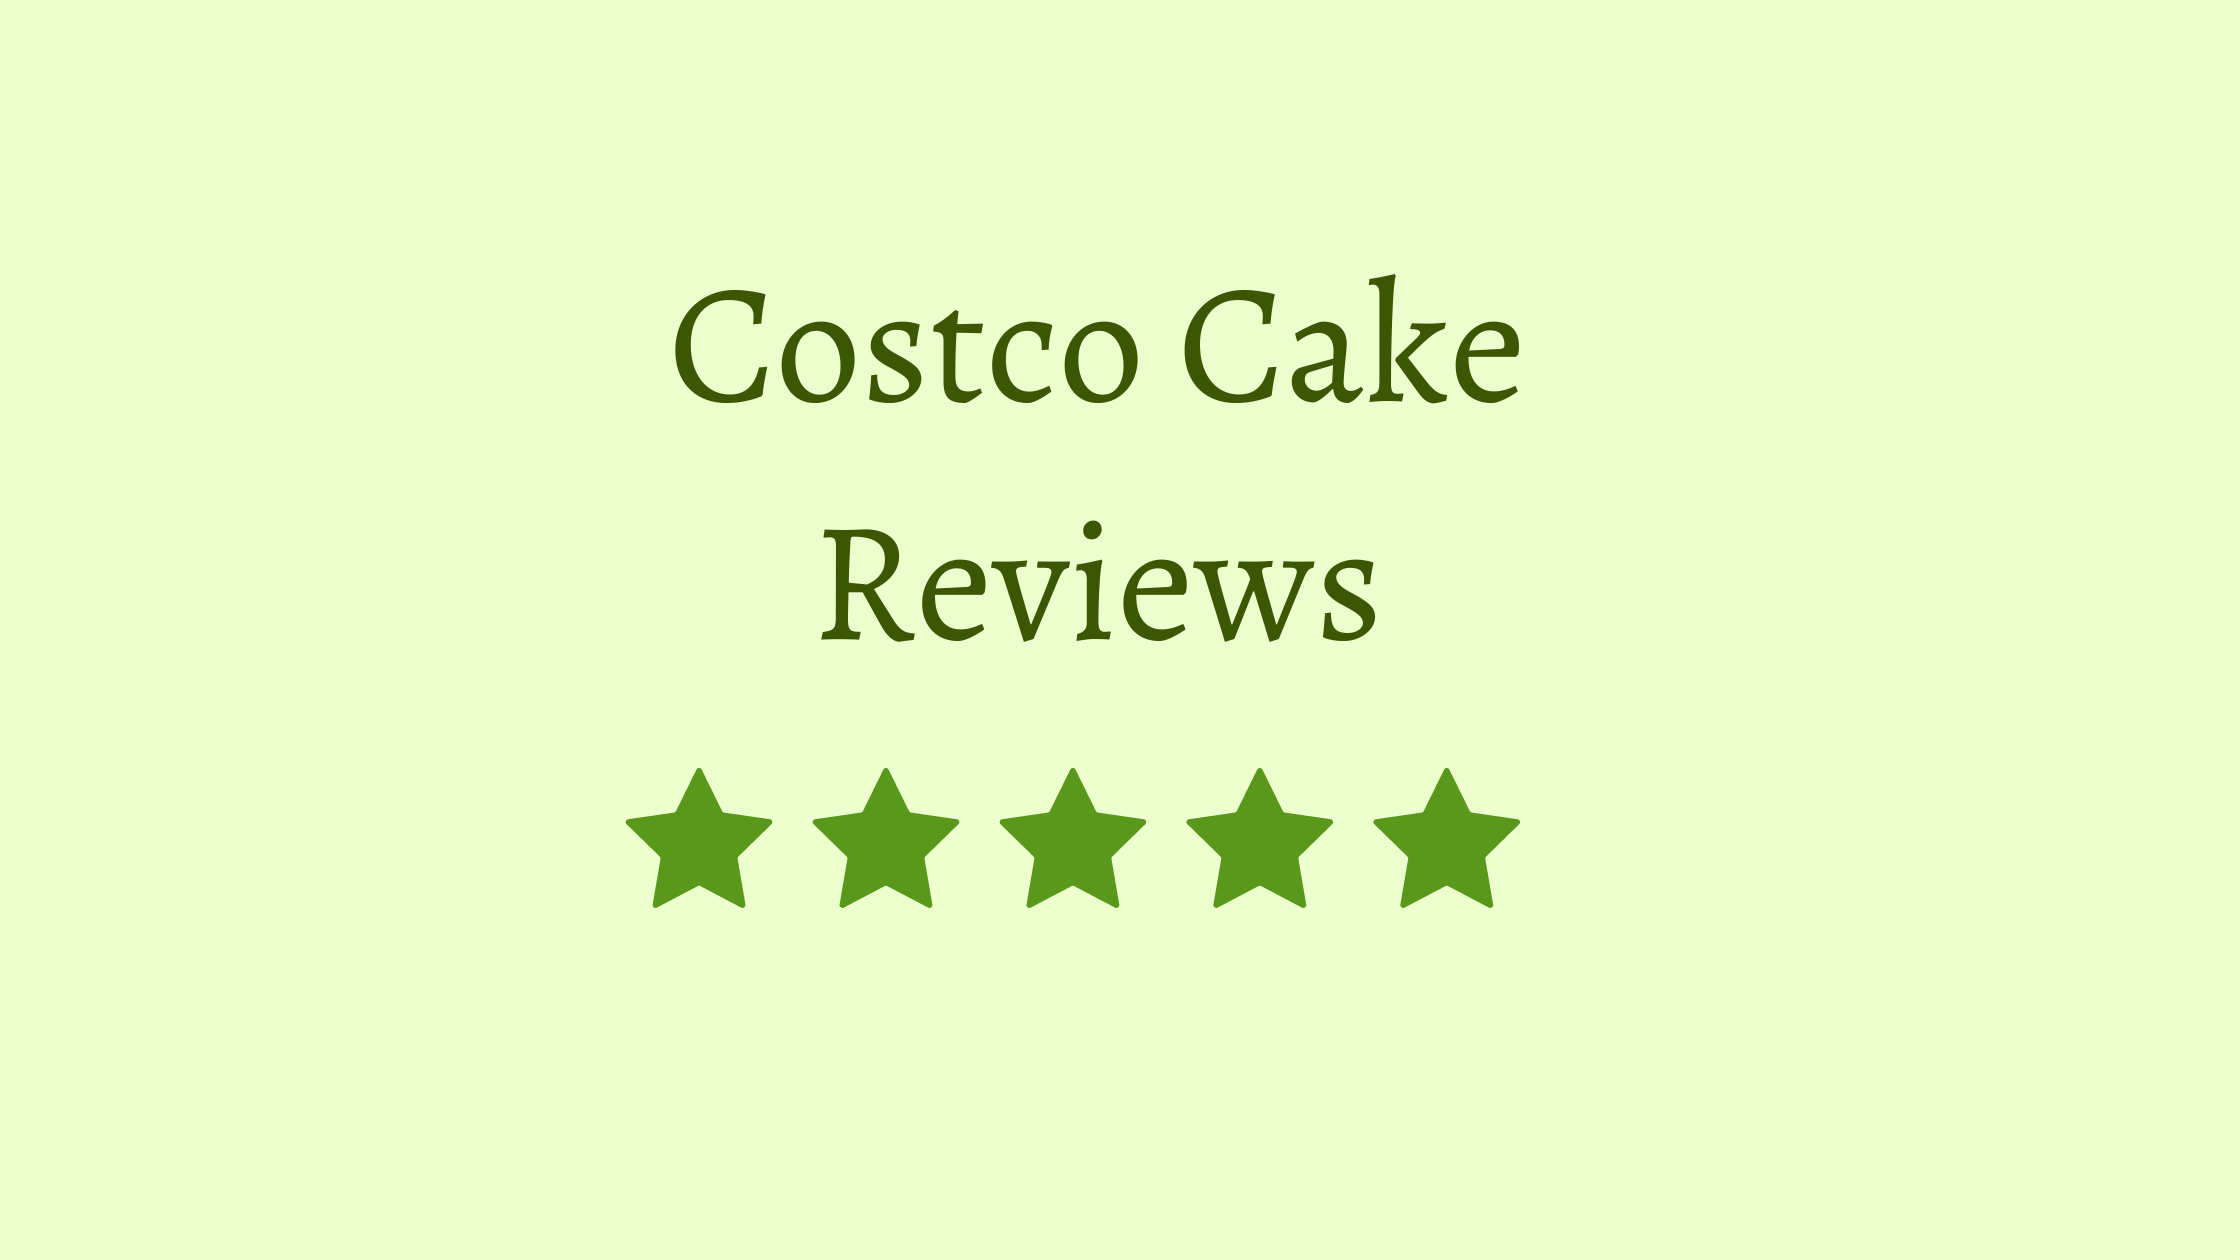 Costco Cake Reviews